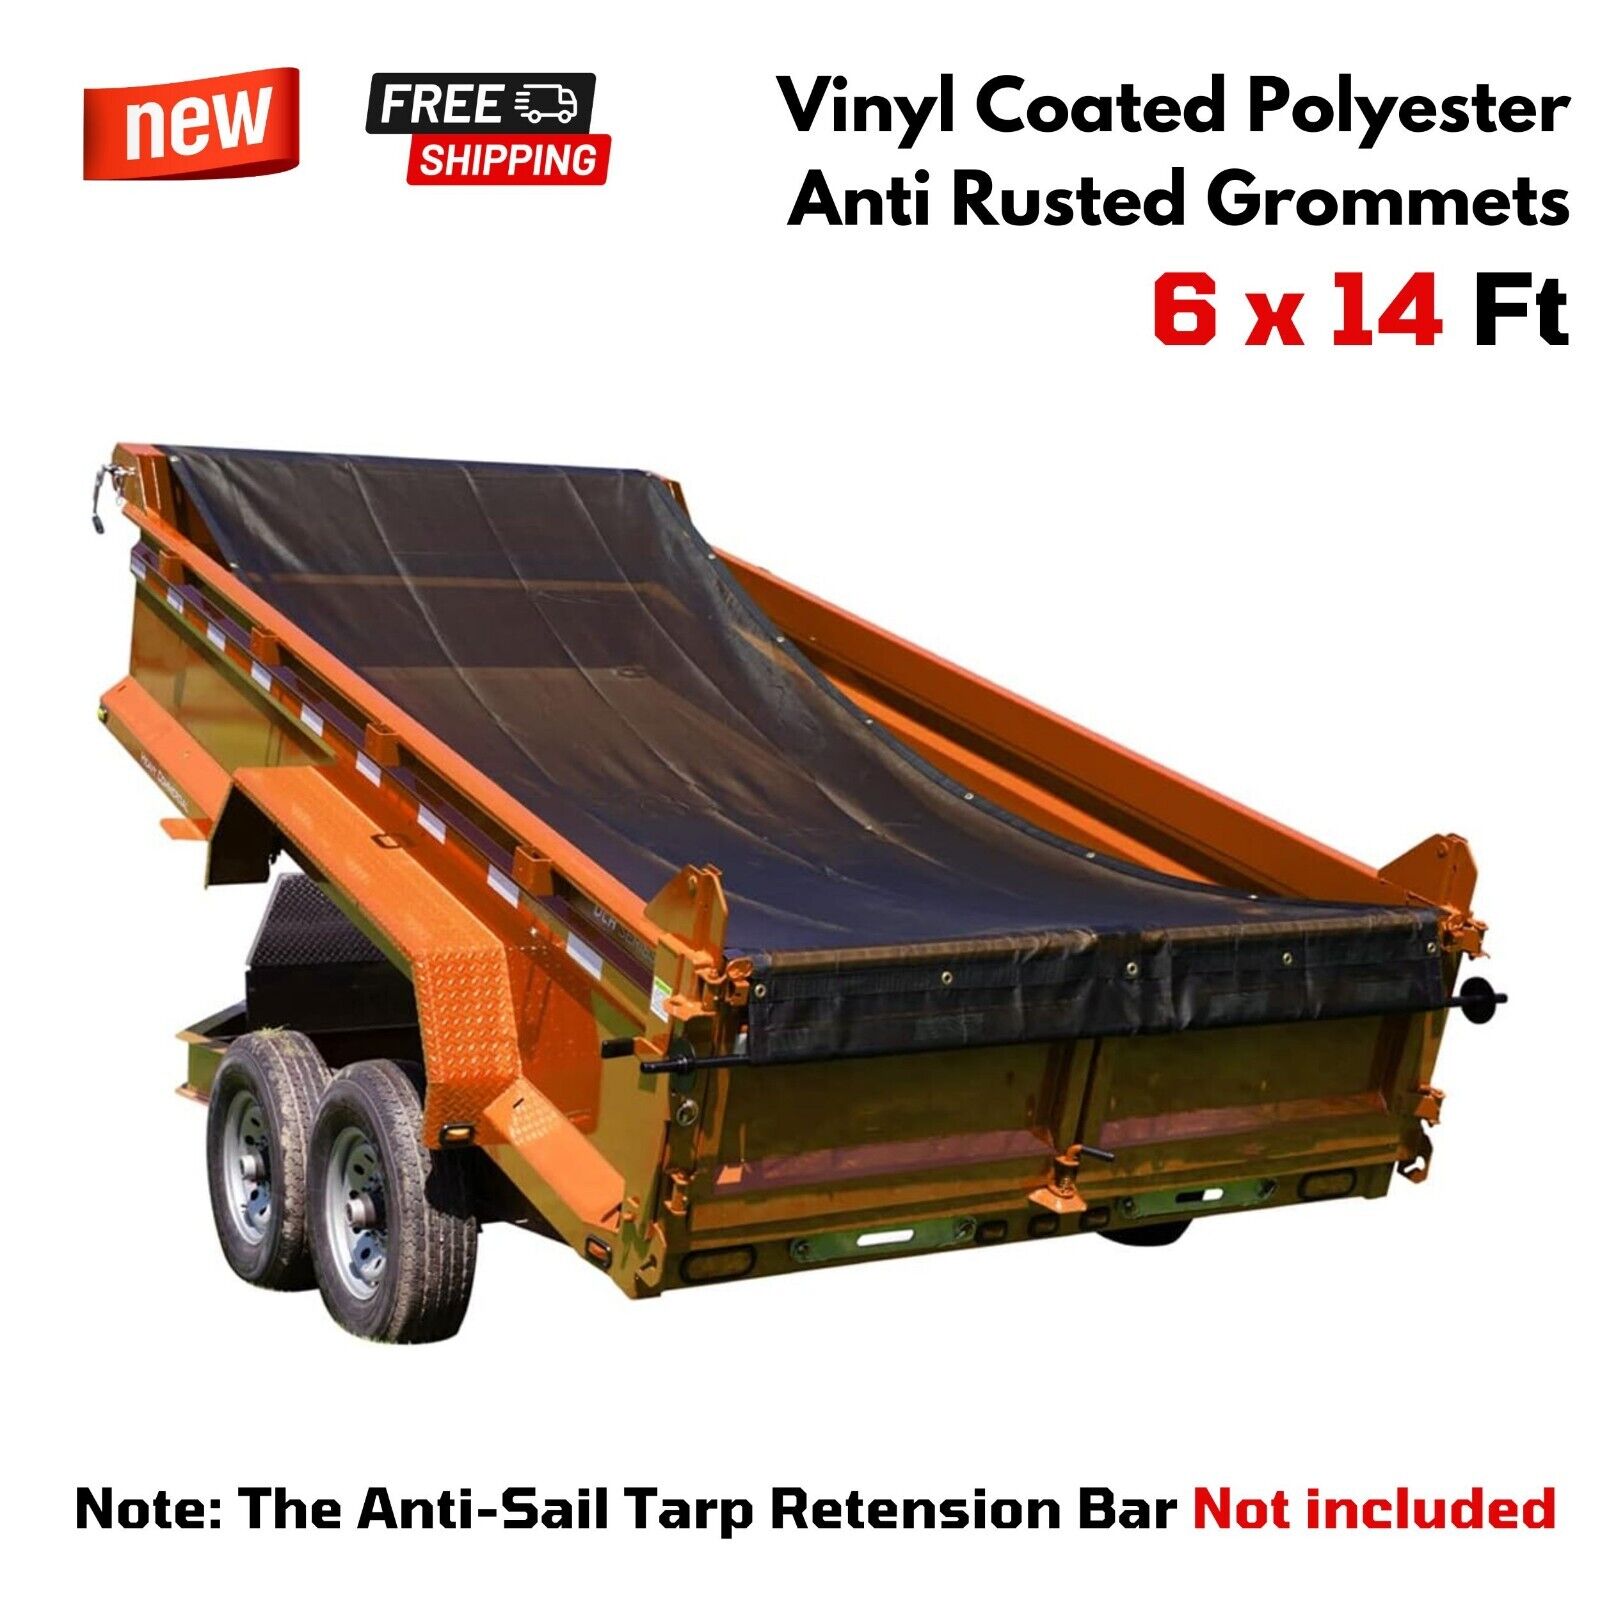 Heavy Duty Dump Truck Mesh Tarp Trailer Polyester Vinyl Coated Cover 6x14 ft